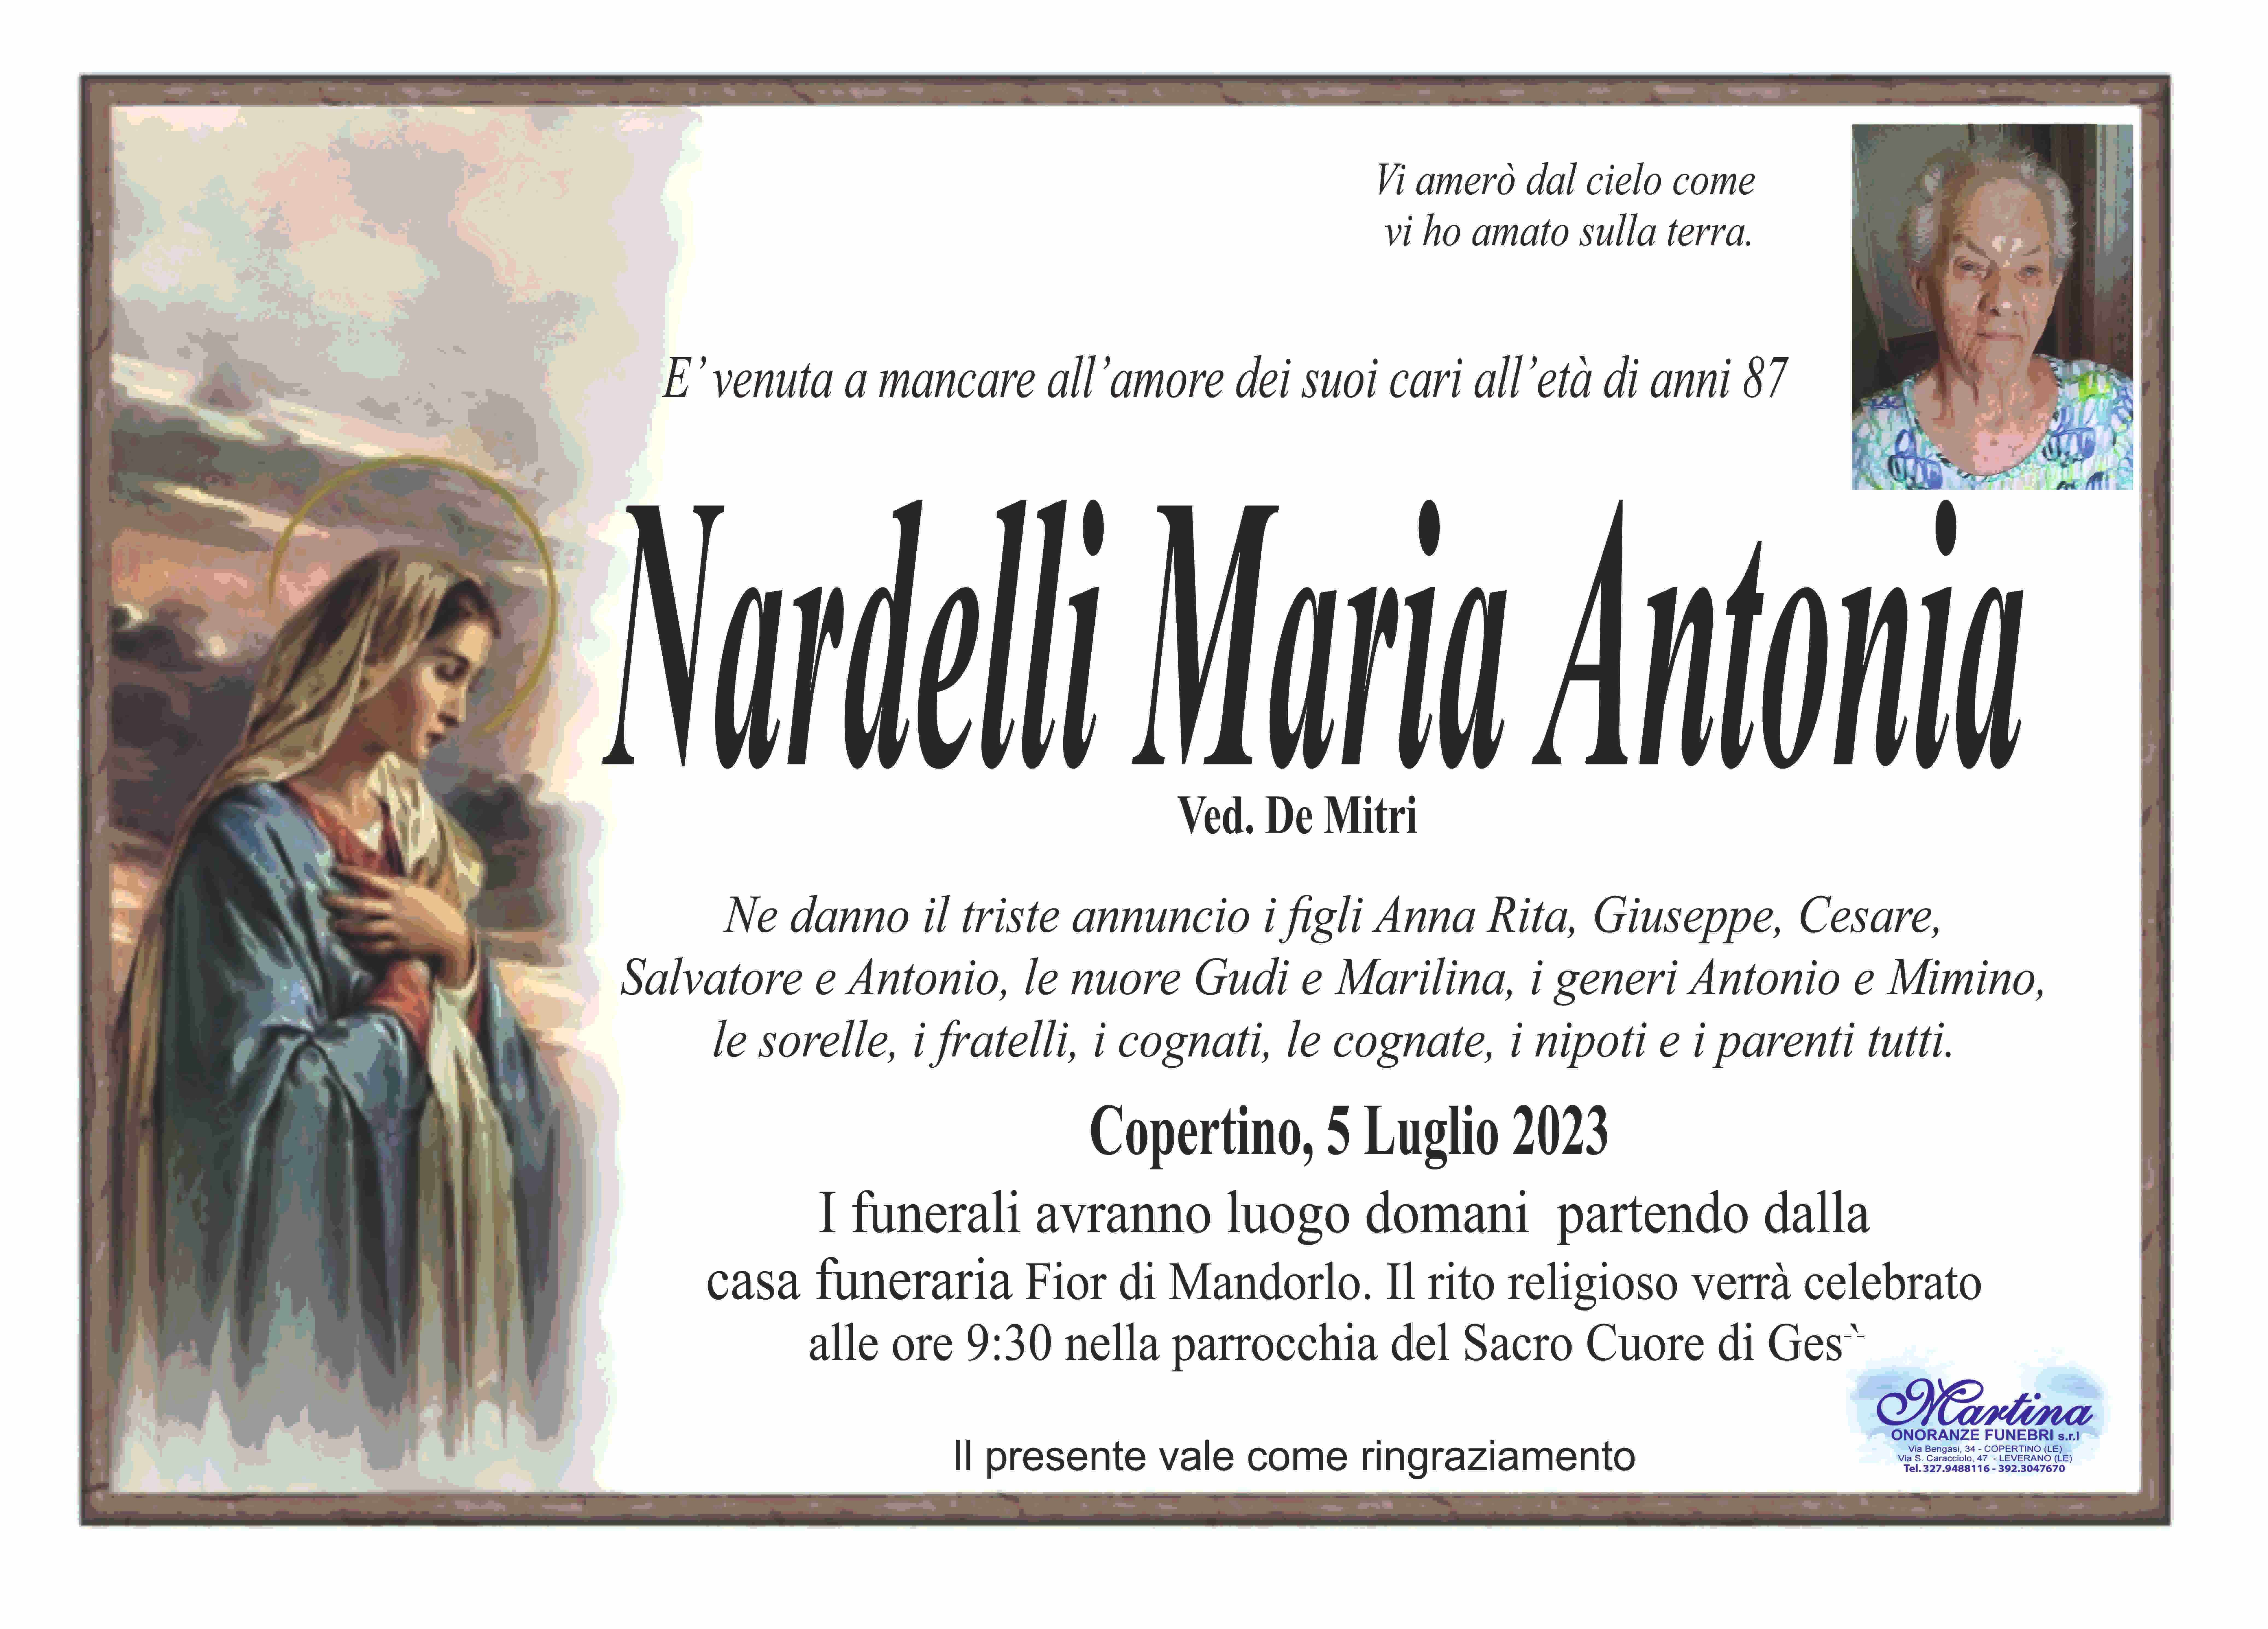 Maria Antonia Nardelli